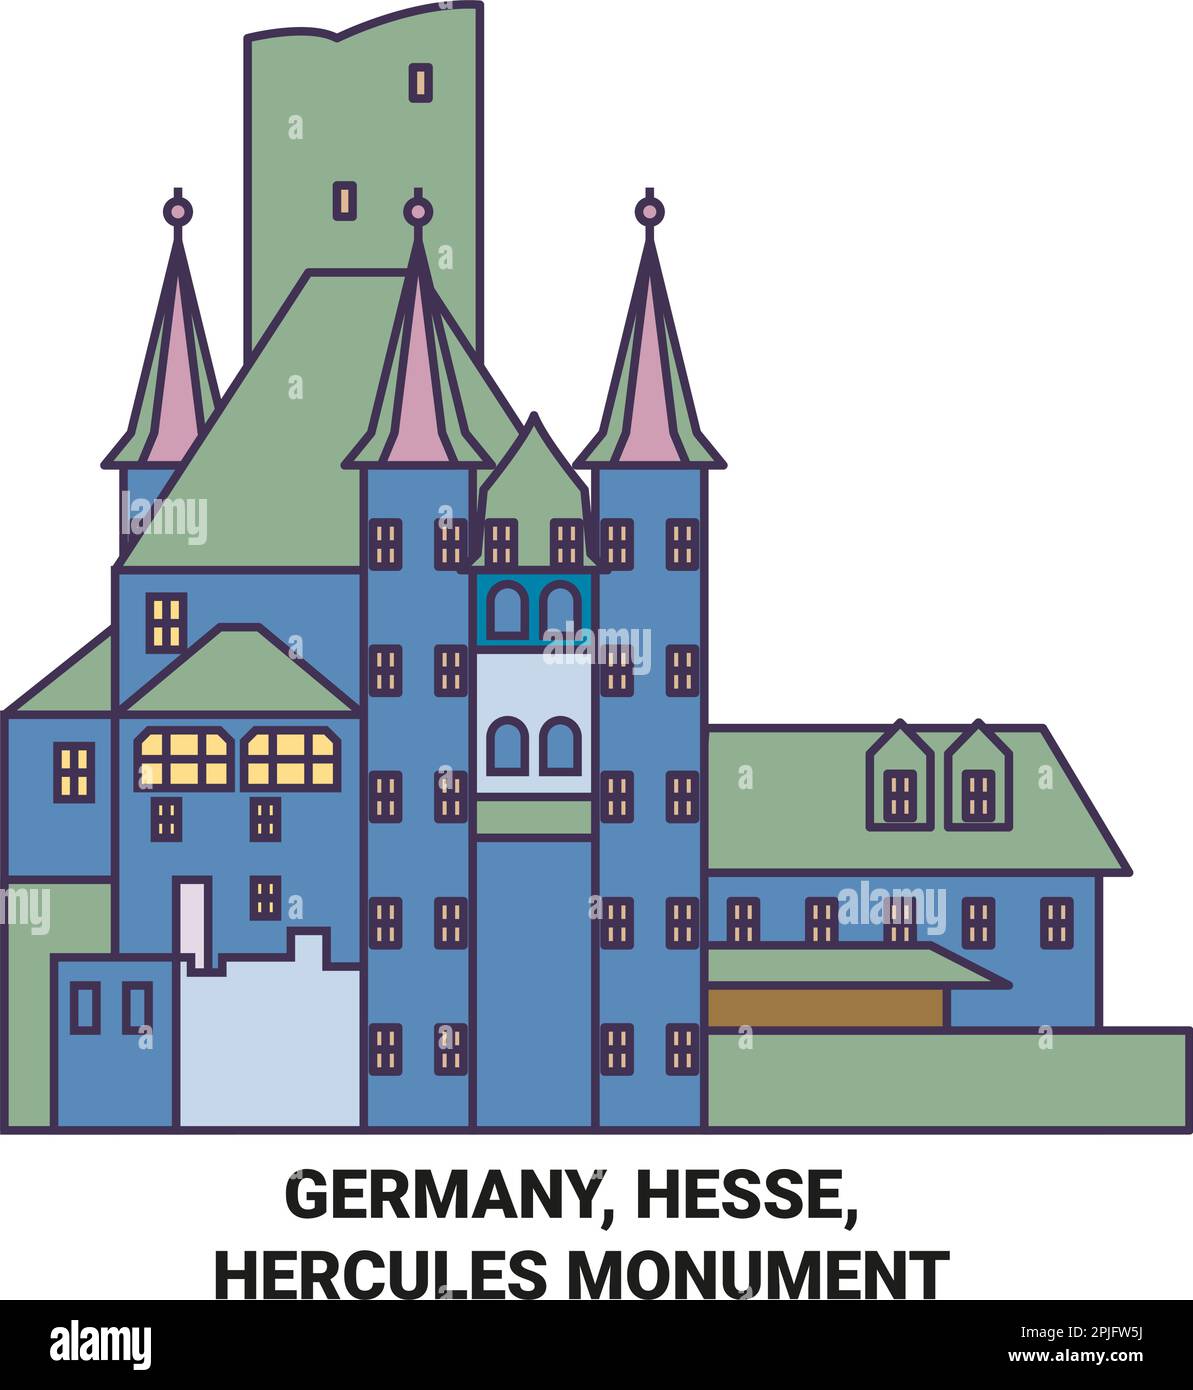 Germany, Hesse, Hercules Monument travel landmark vector illustration Stock Vector